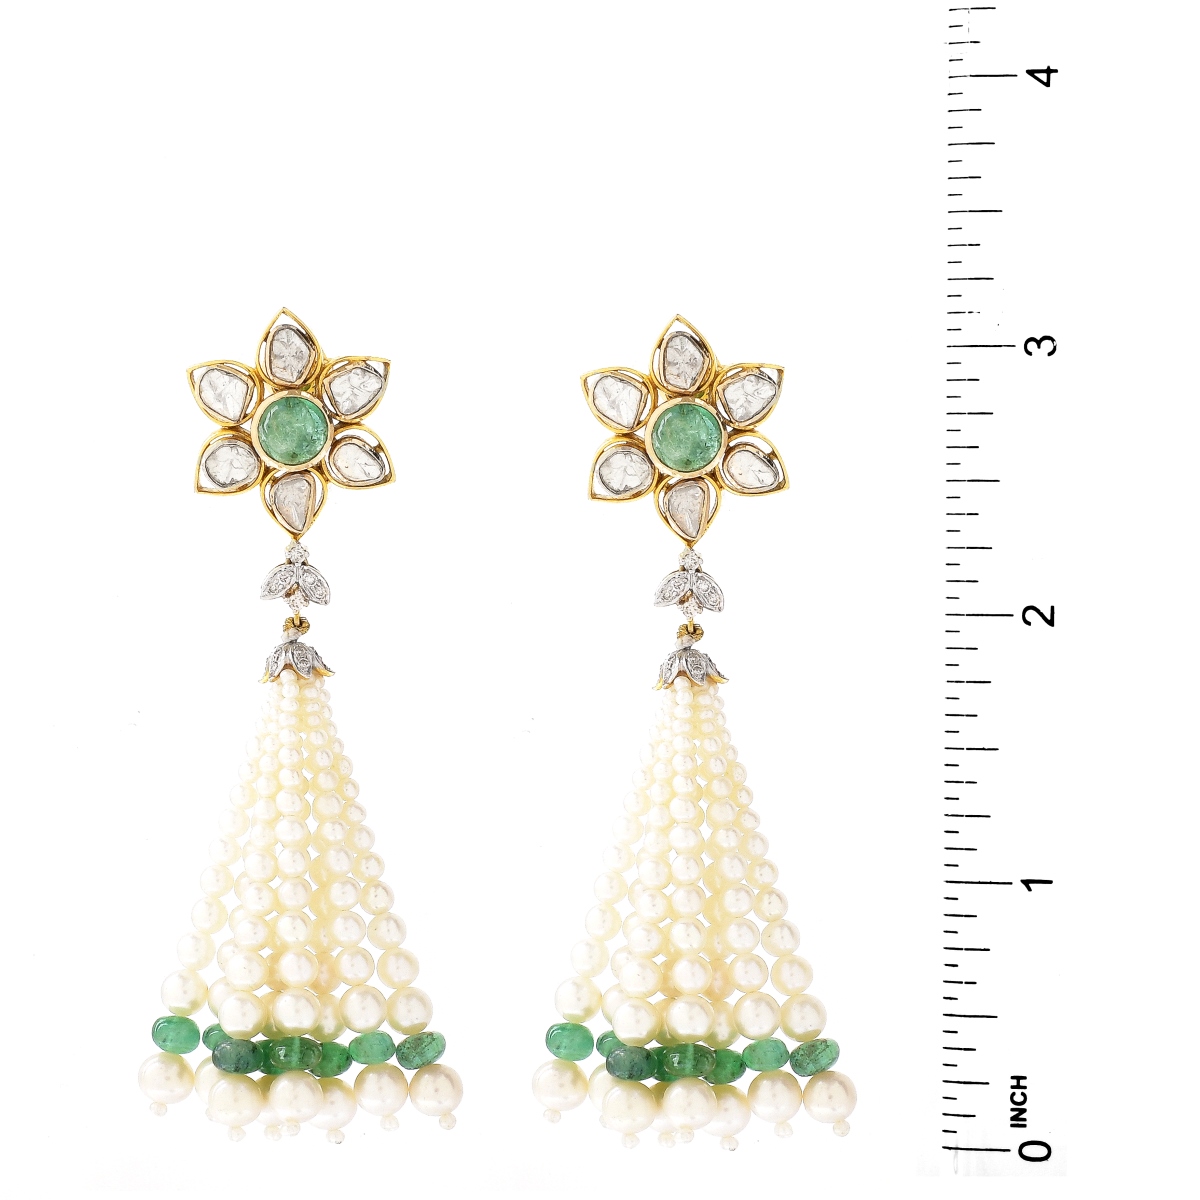 Vintage Diamond, Emerald and Pearl Tassel Earrings